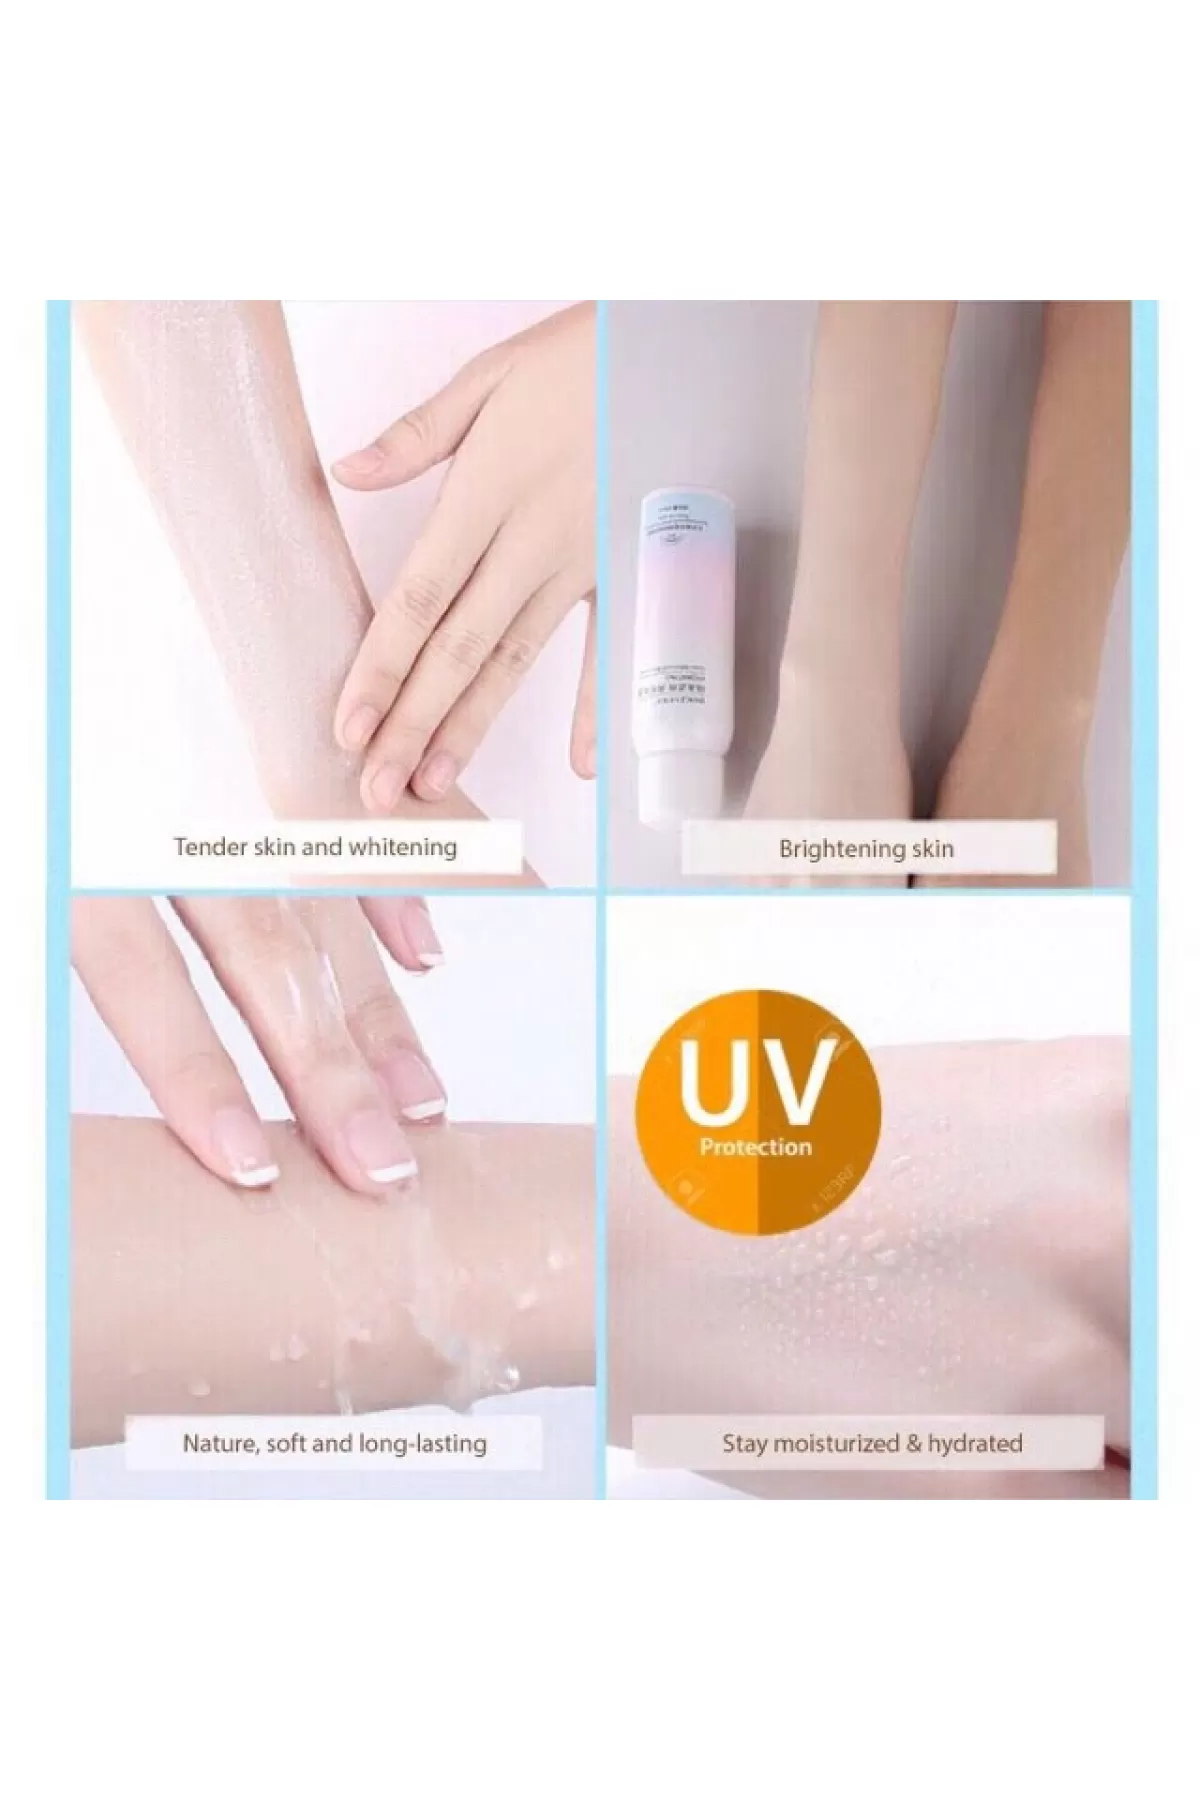 حاوی spf 30 محافظت از پوست در برابر اشعه UVA/UVB حاوی عصاره انار امیجز IMAGES ضد آفتاب و روشن کننده پوست